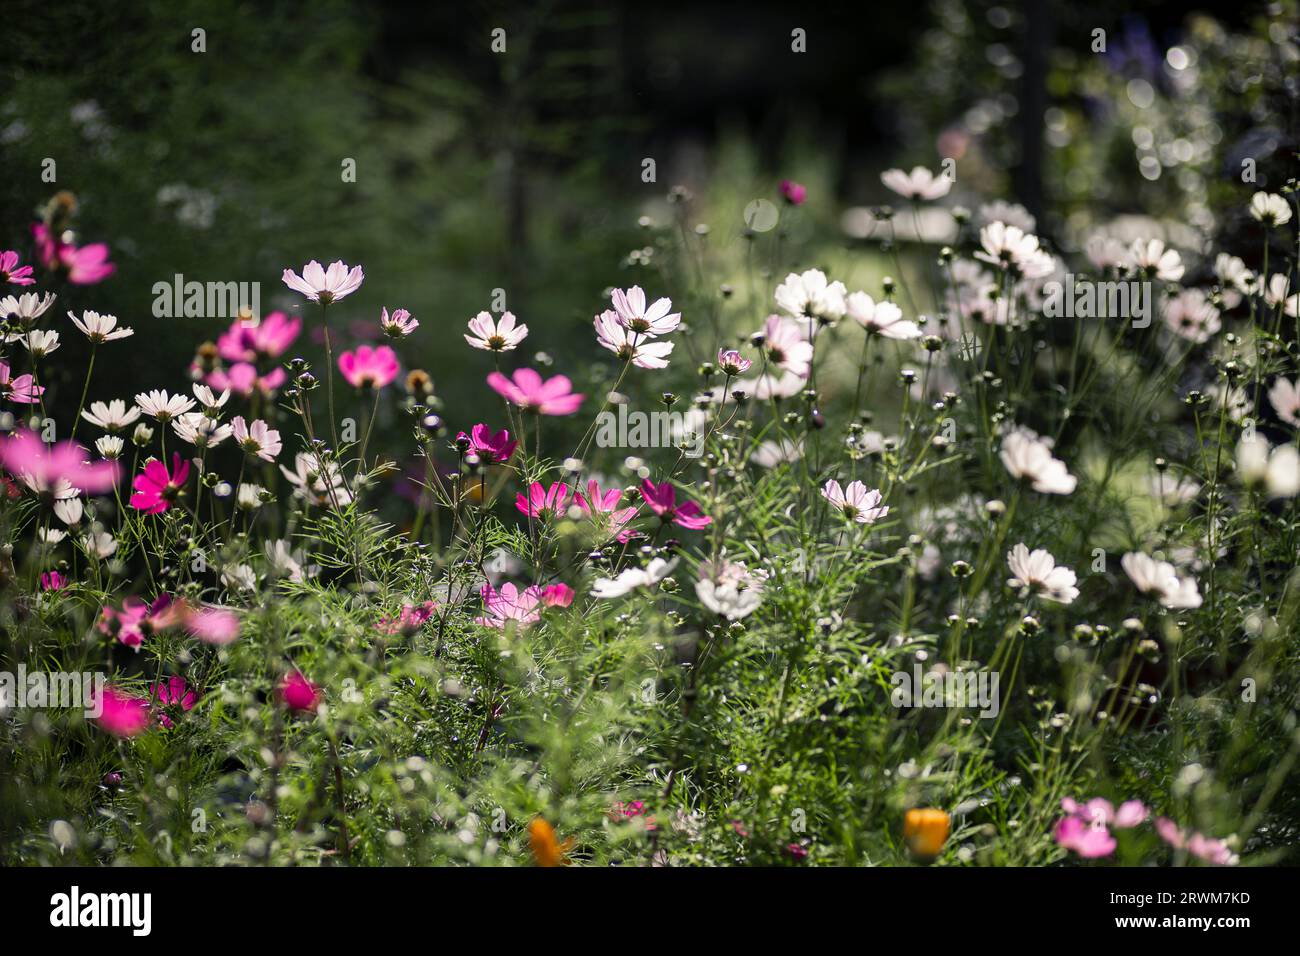 La squisita bellezza dei fiori estivi nelle sfumature di bianco, rosa chiaro e rosa, che crescono liberamente in un giardino svedese. I fiori sono retroilluminati, creatina Foto Stock